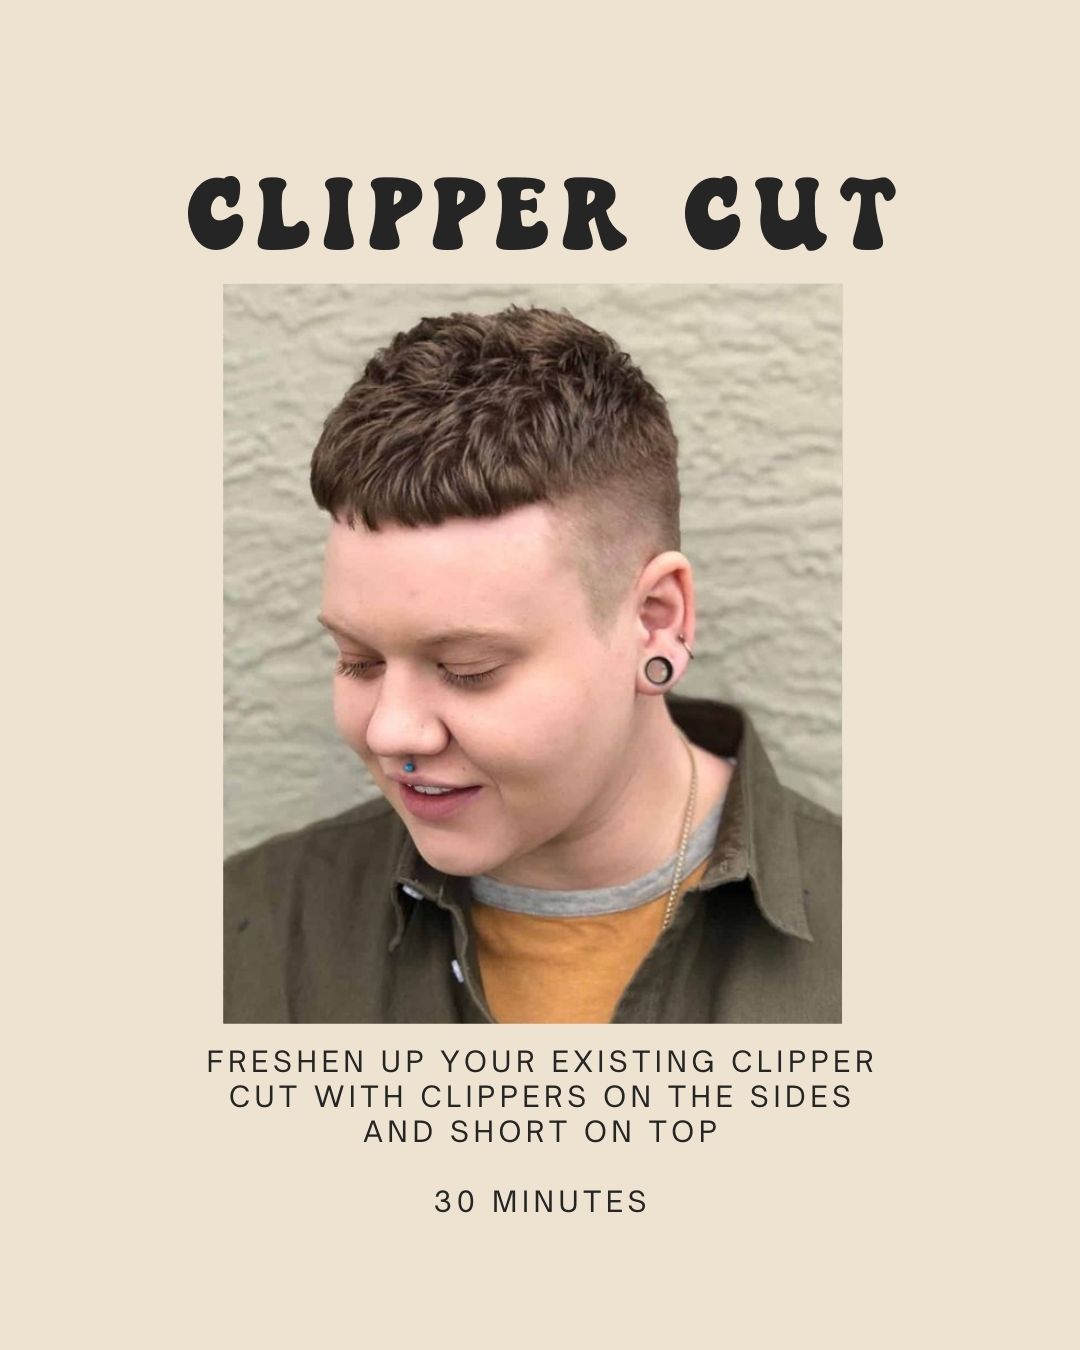 Clipper Cut